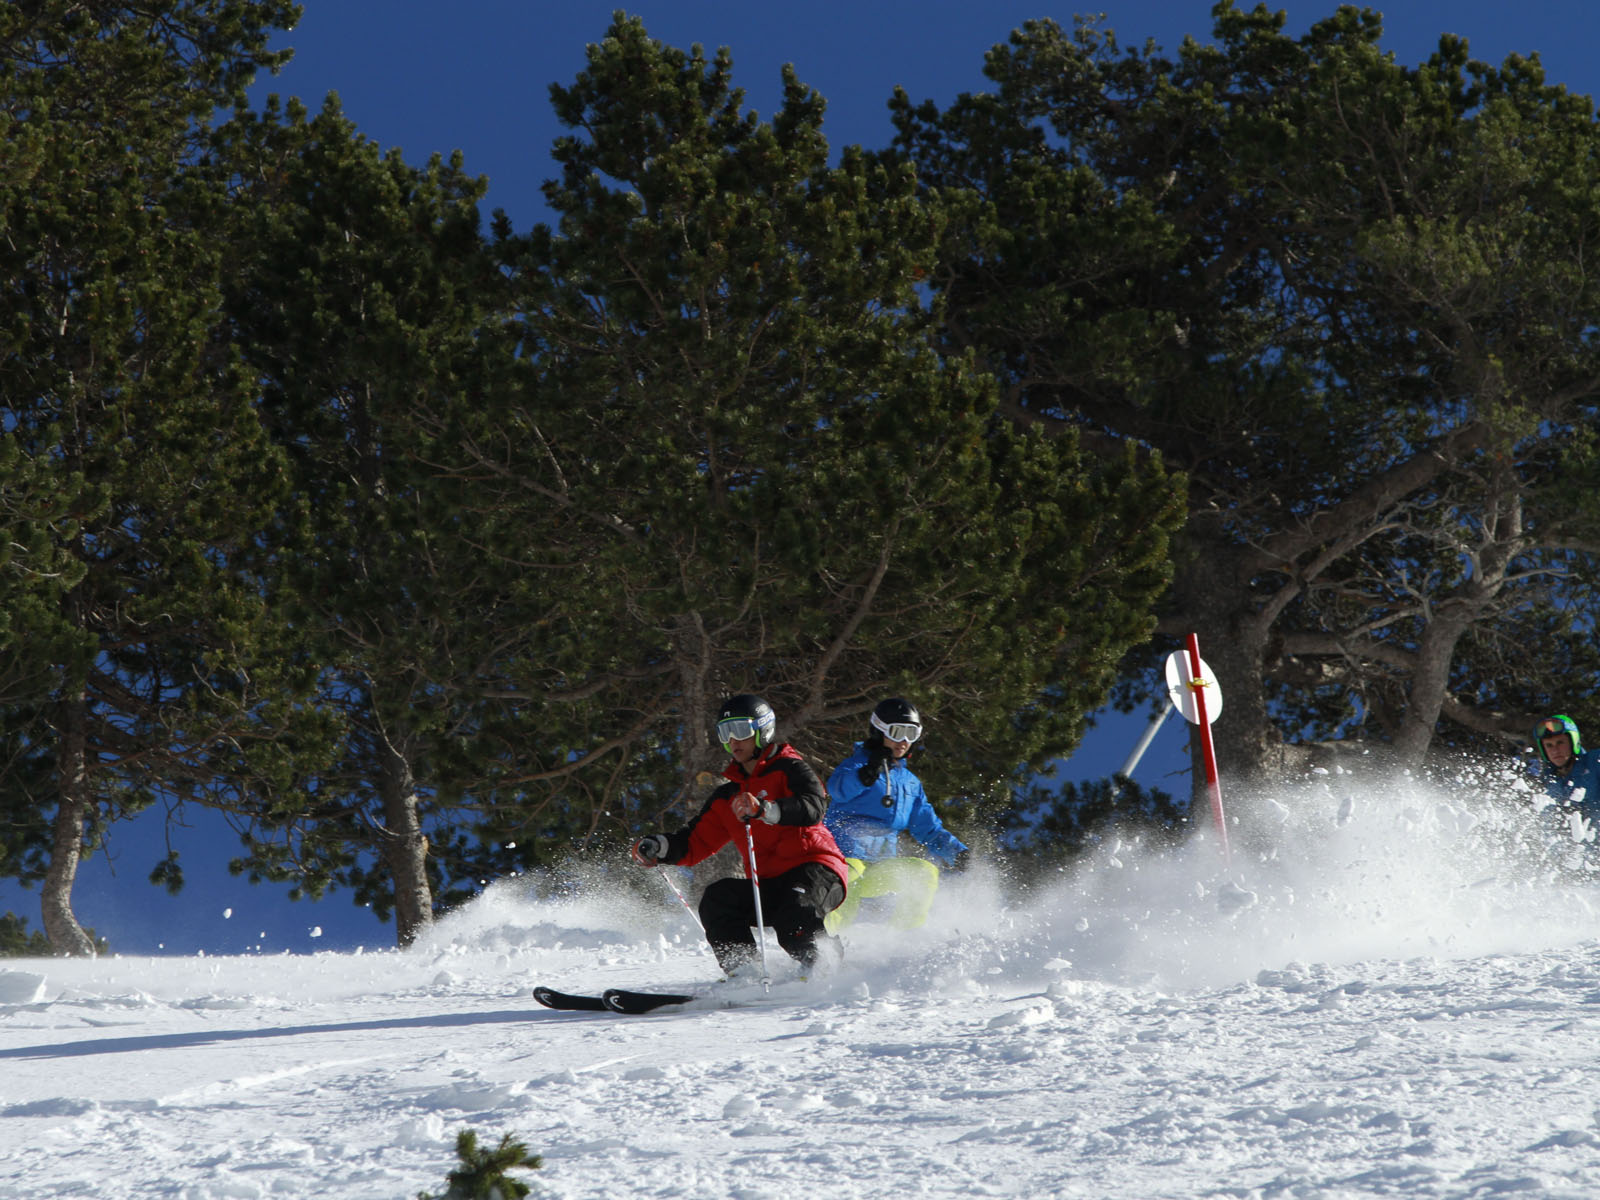 Ripollès Season Ski pass